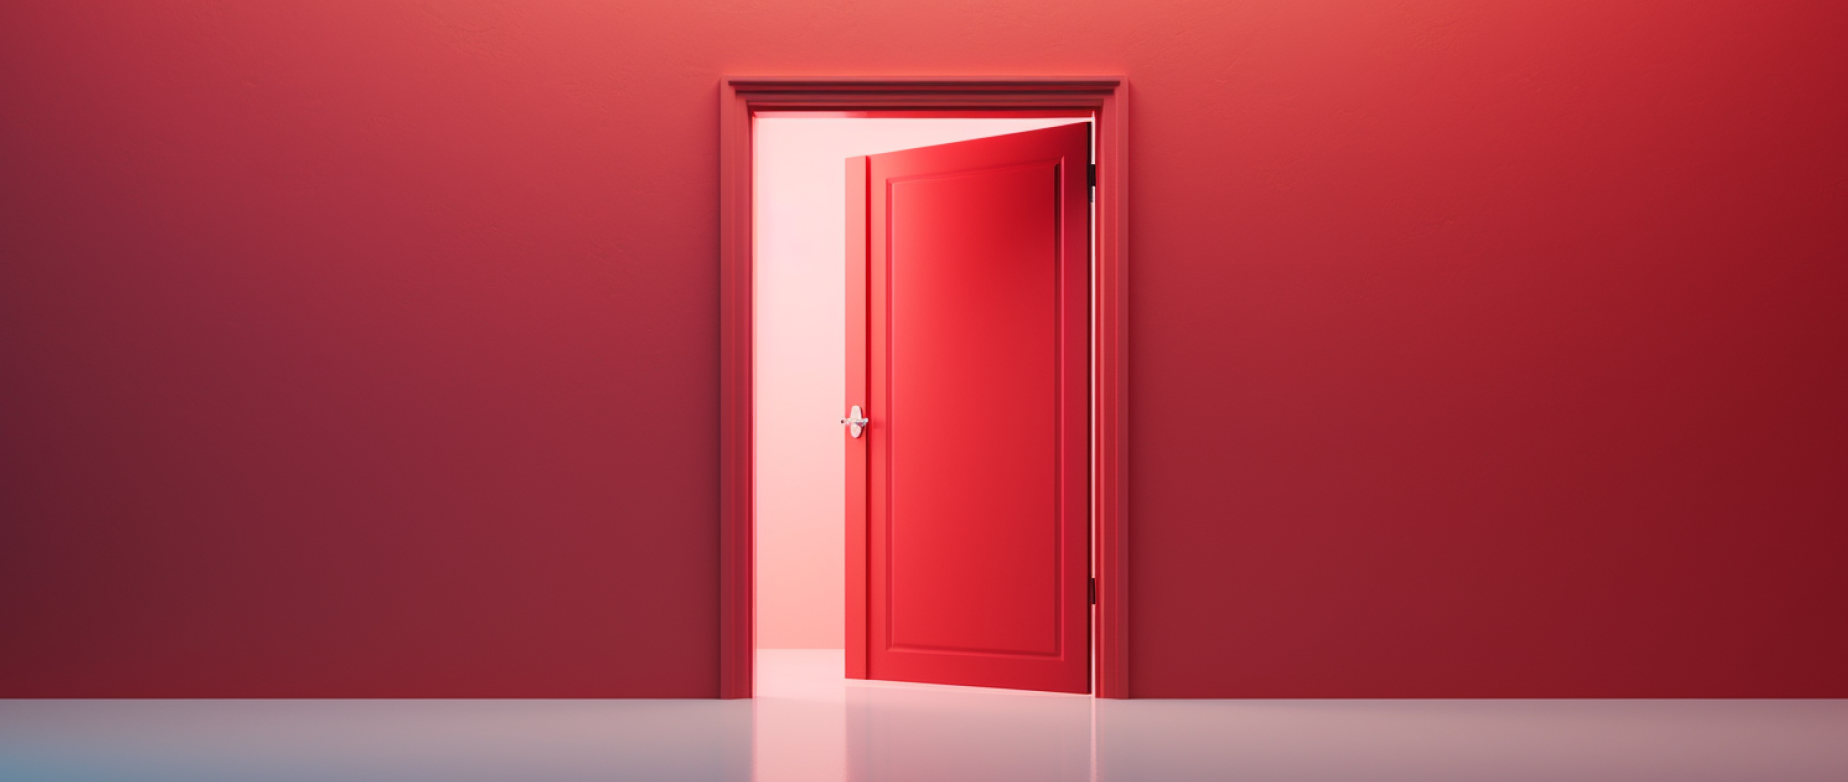 An open red door in a red room.